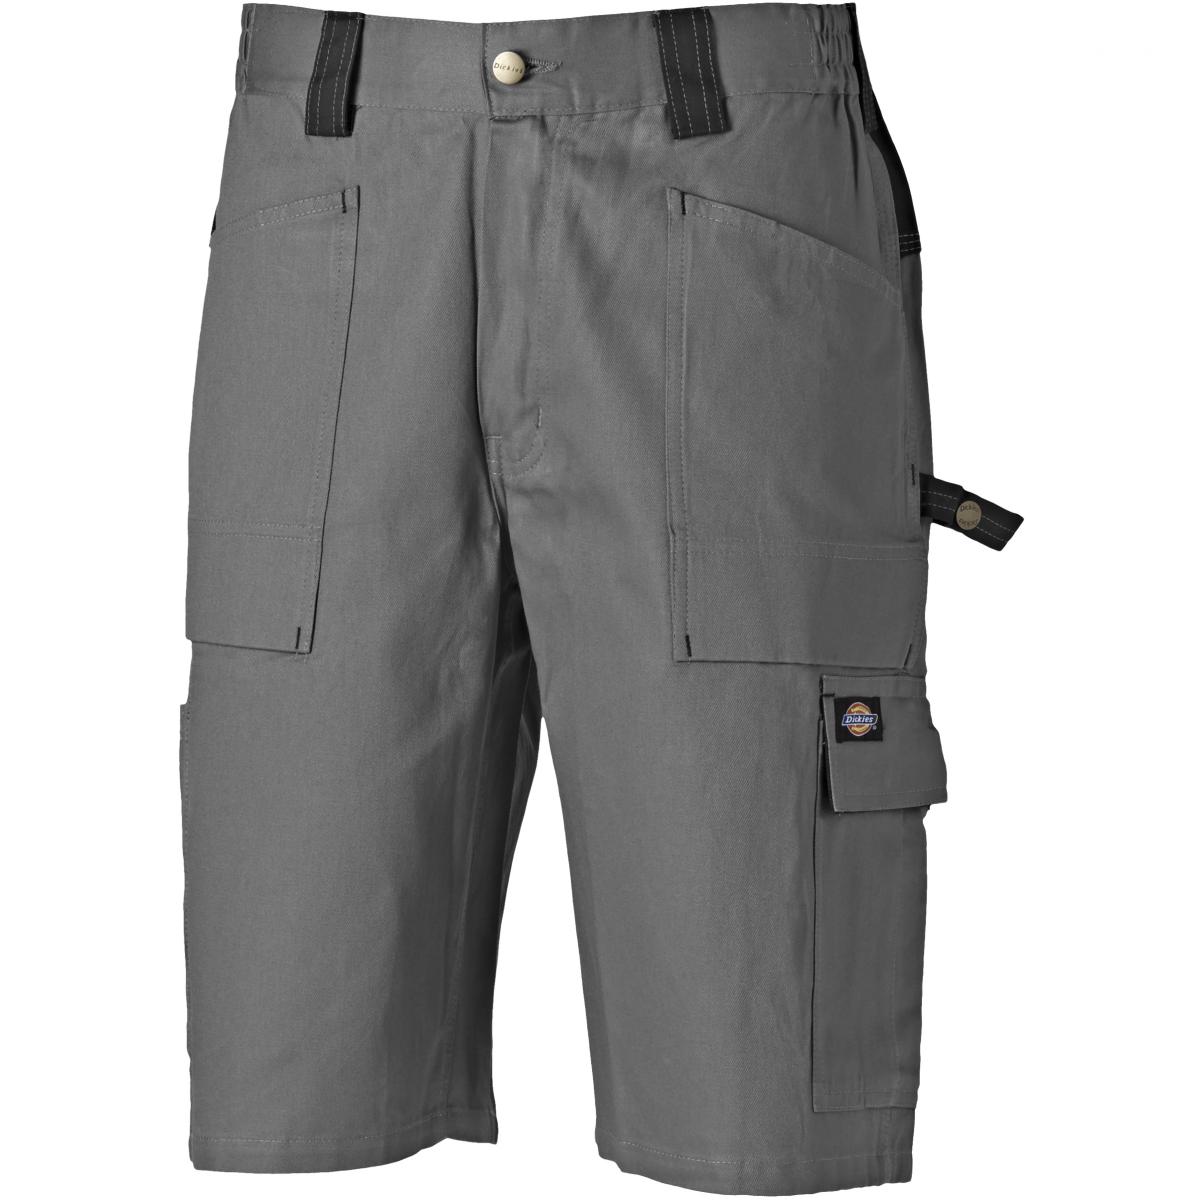 Hersteller: Dickies Herstellernummer: WD4979 Artikelbezeichnung: GDT 210 Shorts - Arbeishose kurz Farbe: Grau/Schwarz